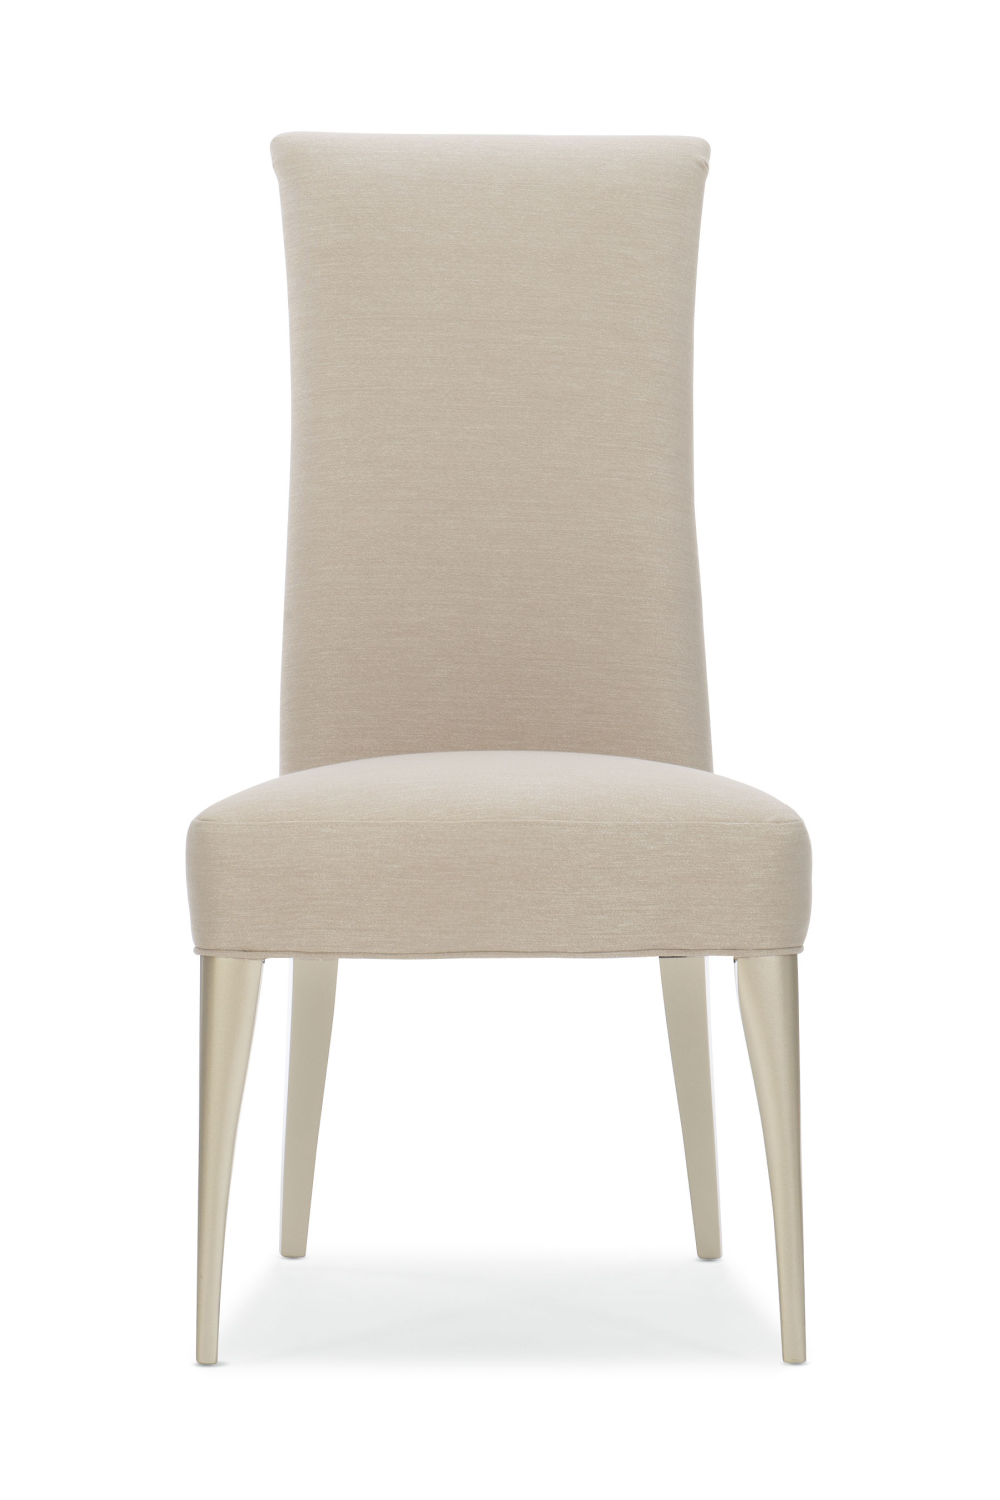 Modern Minimalist Dining Chair | Caracole Socially Acceptable | Oroa.com